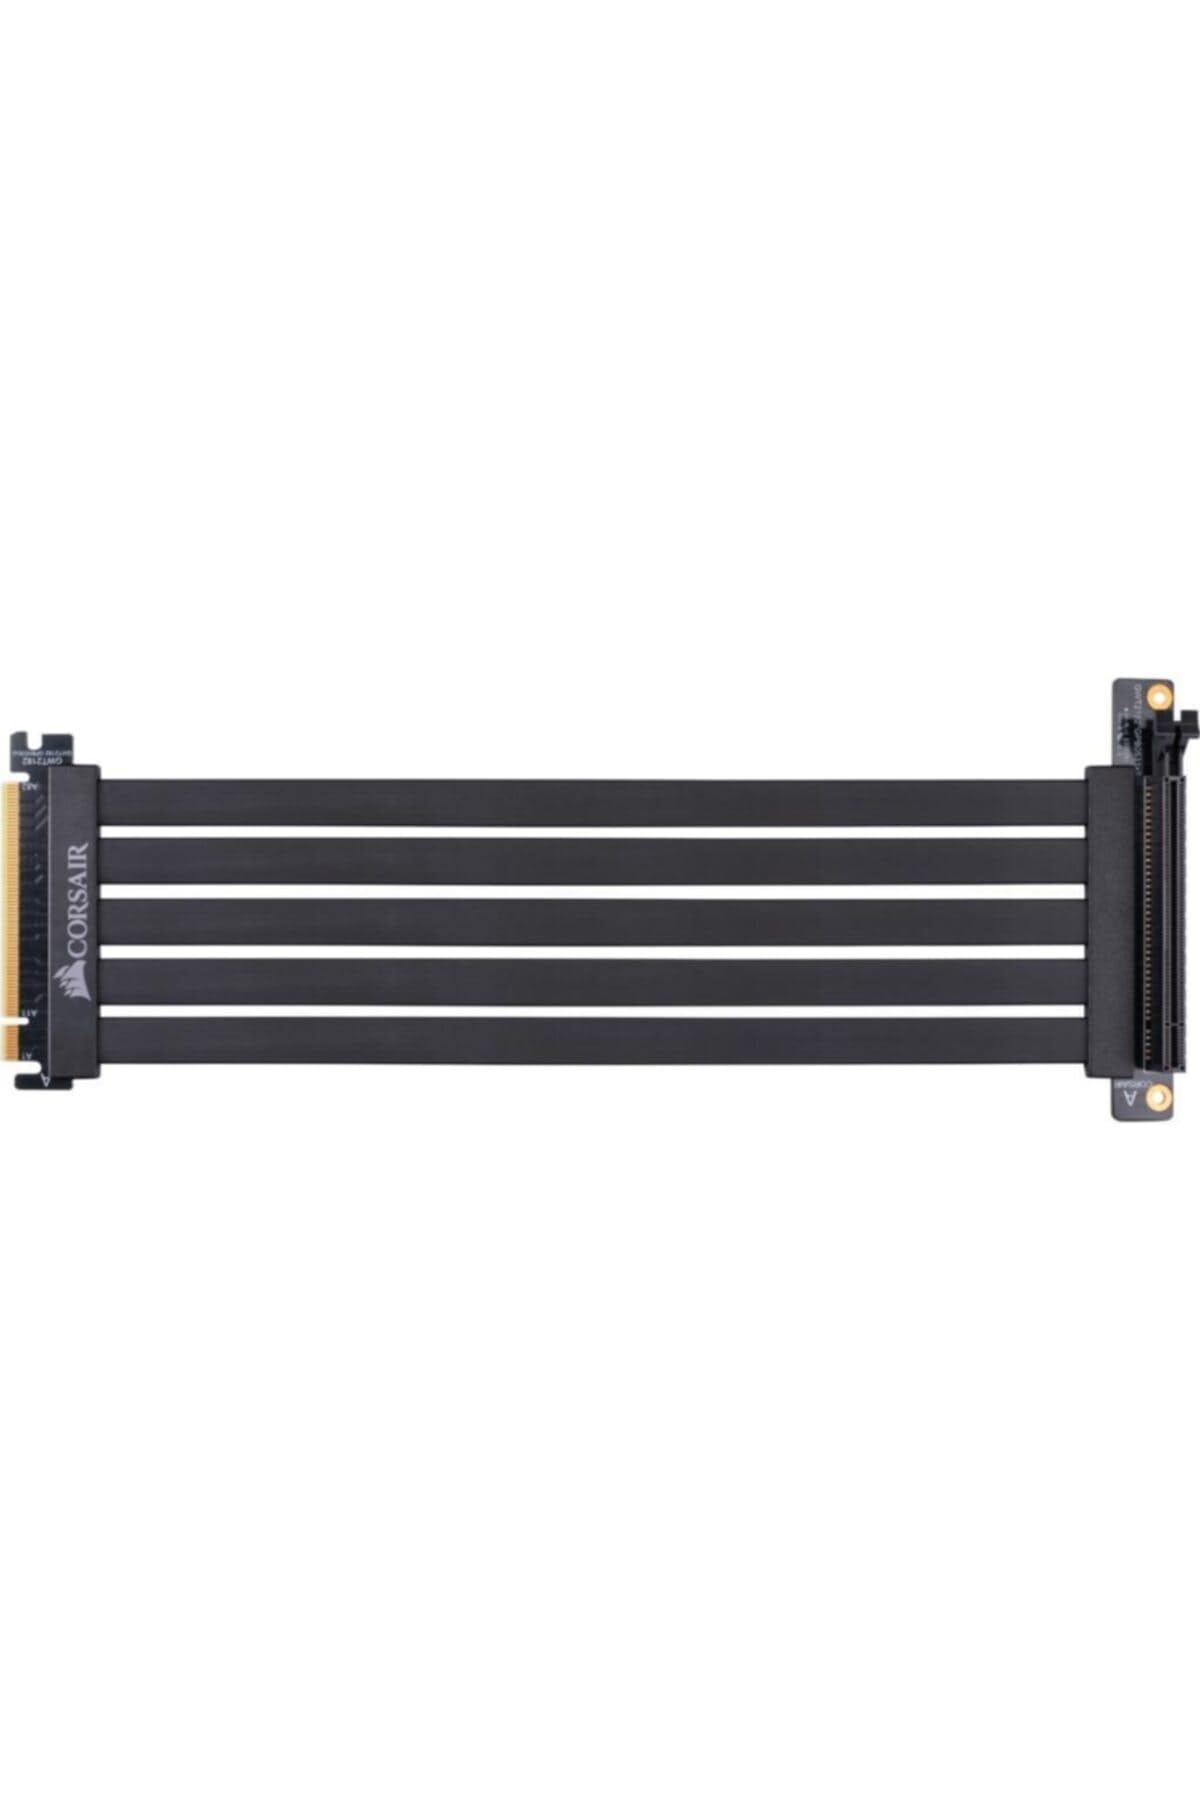 CORSAIR Premium PCIe 3.0 x16 Extension Cable, 300mm